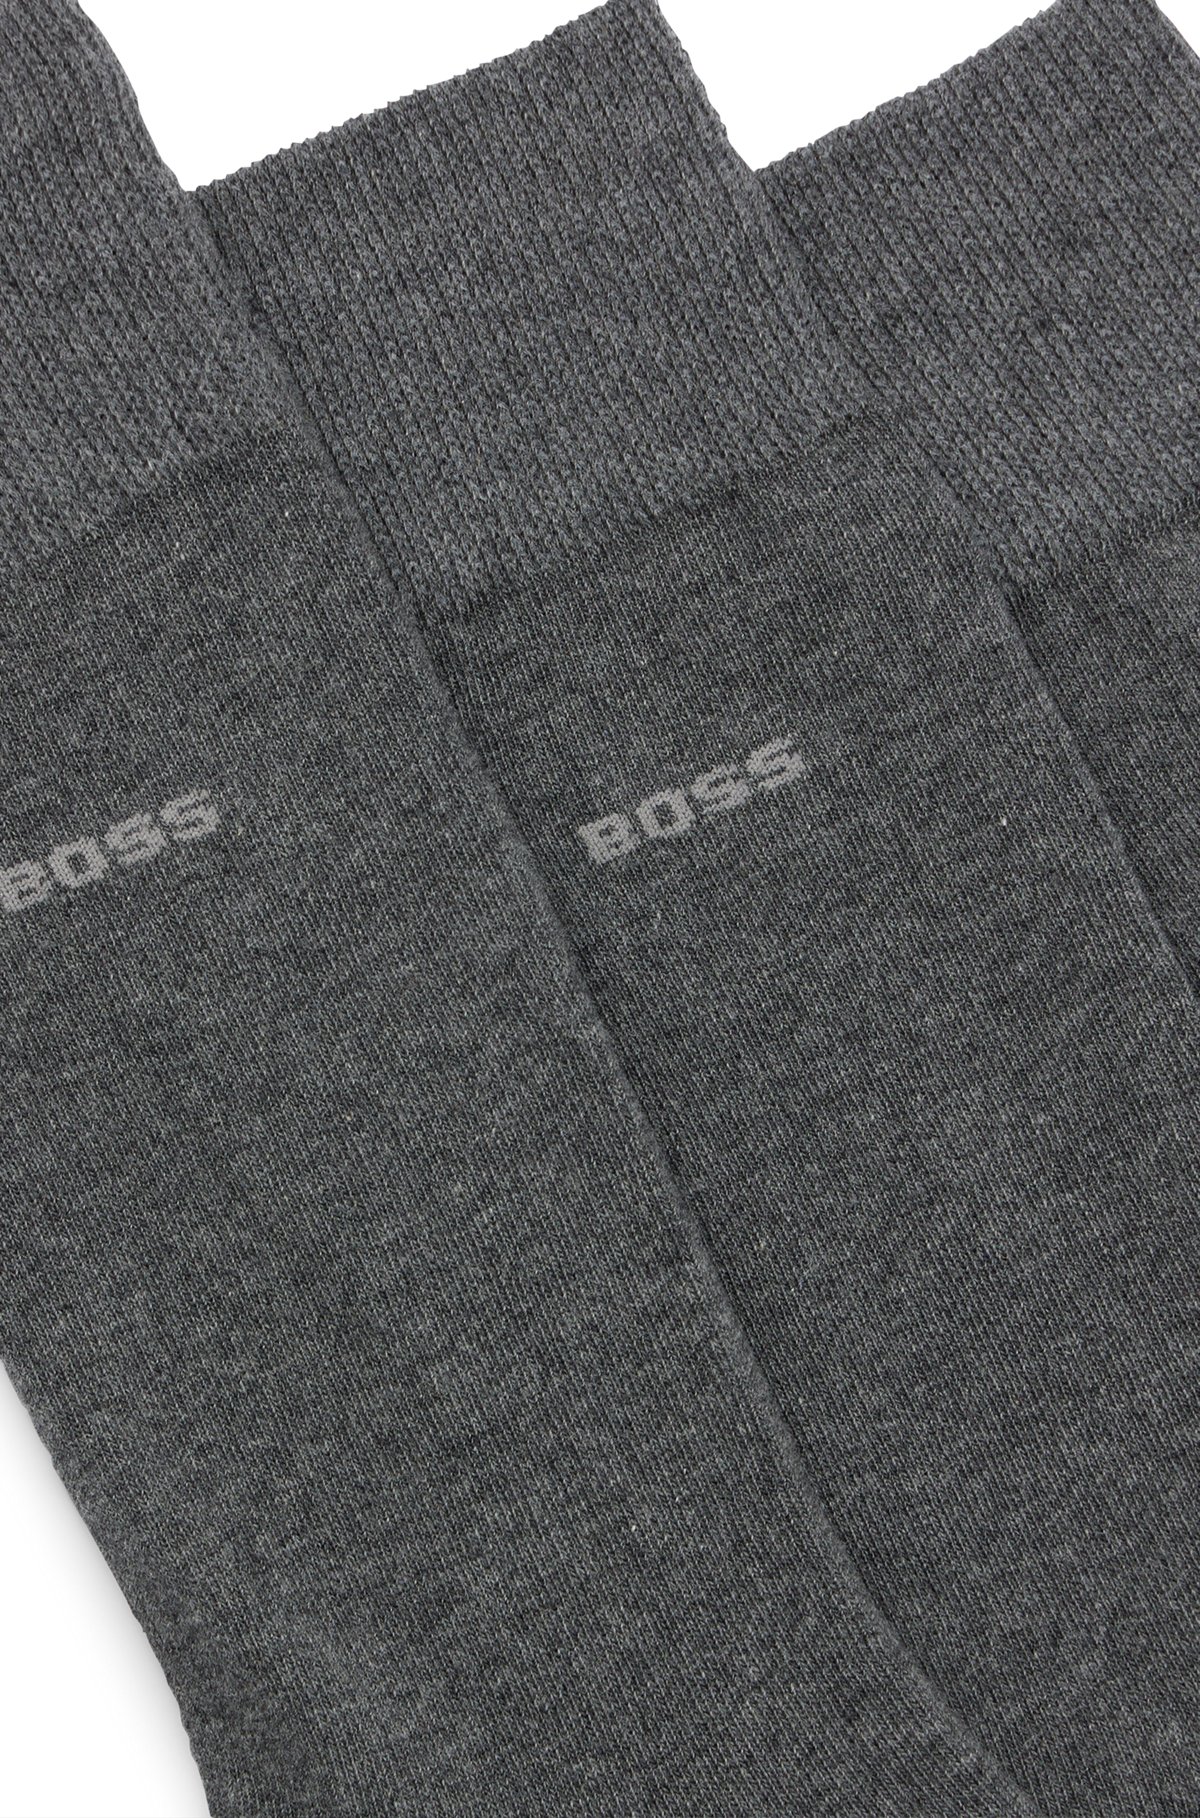 Conjunto de três pares de meias regulares em tecido elástico, Cinzento